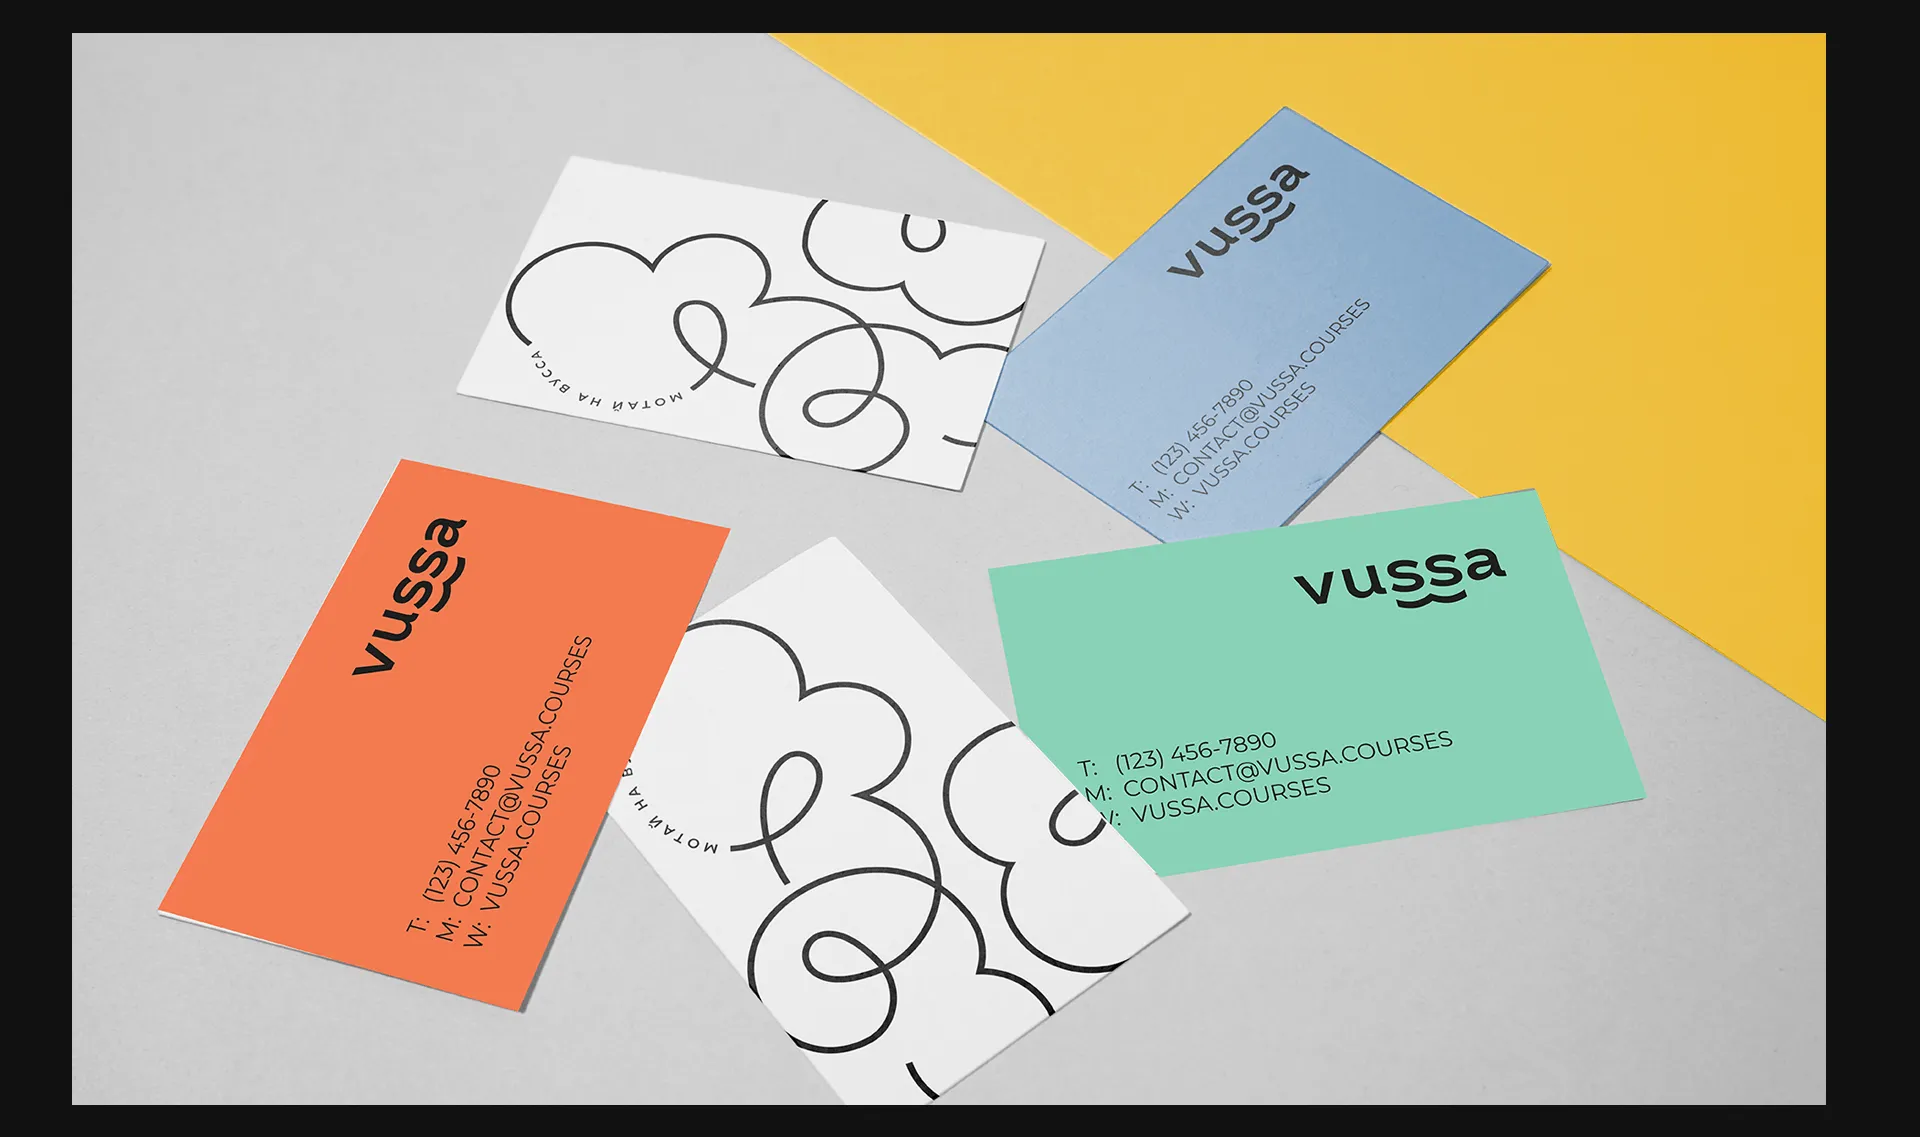 Фото №4: Vussa -  украинская образовательная платформа - Разработка логотипа и создание бренда в студии брендинга Rocketmen Agency